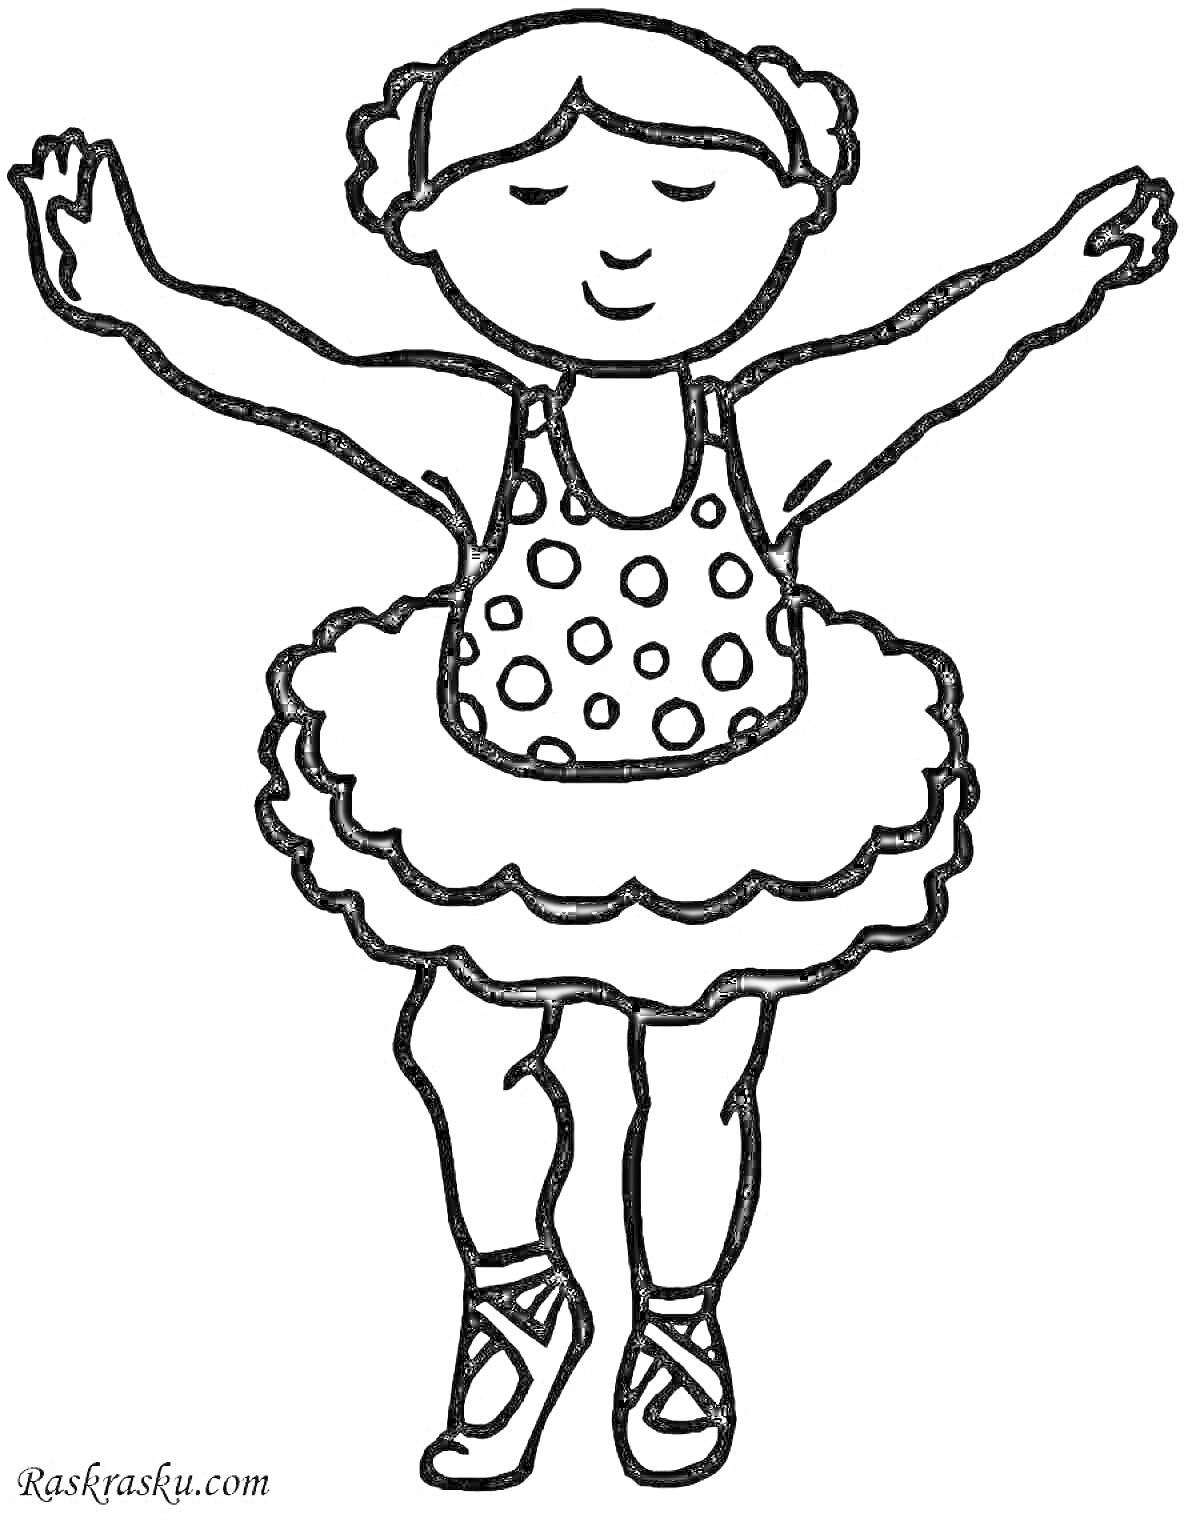 РаскраскаТанцующая девочка в пачке с поднятыми руками